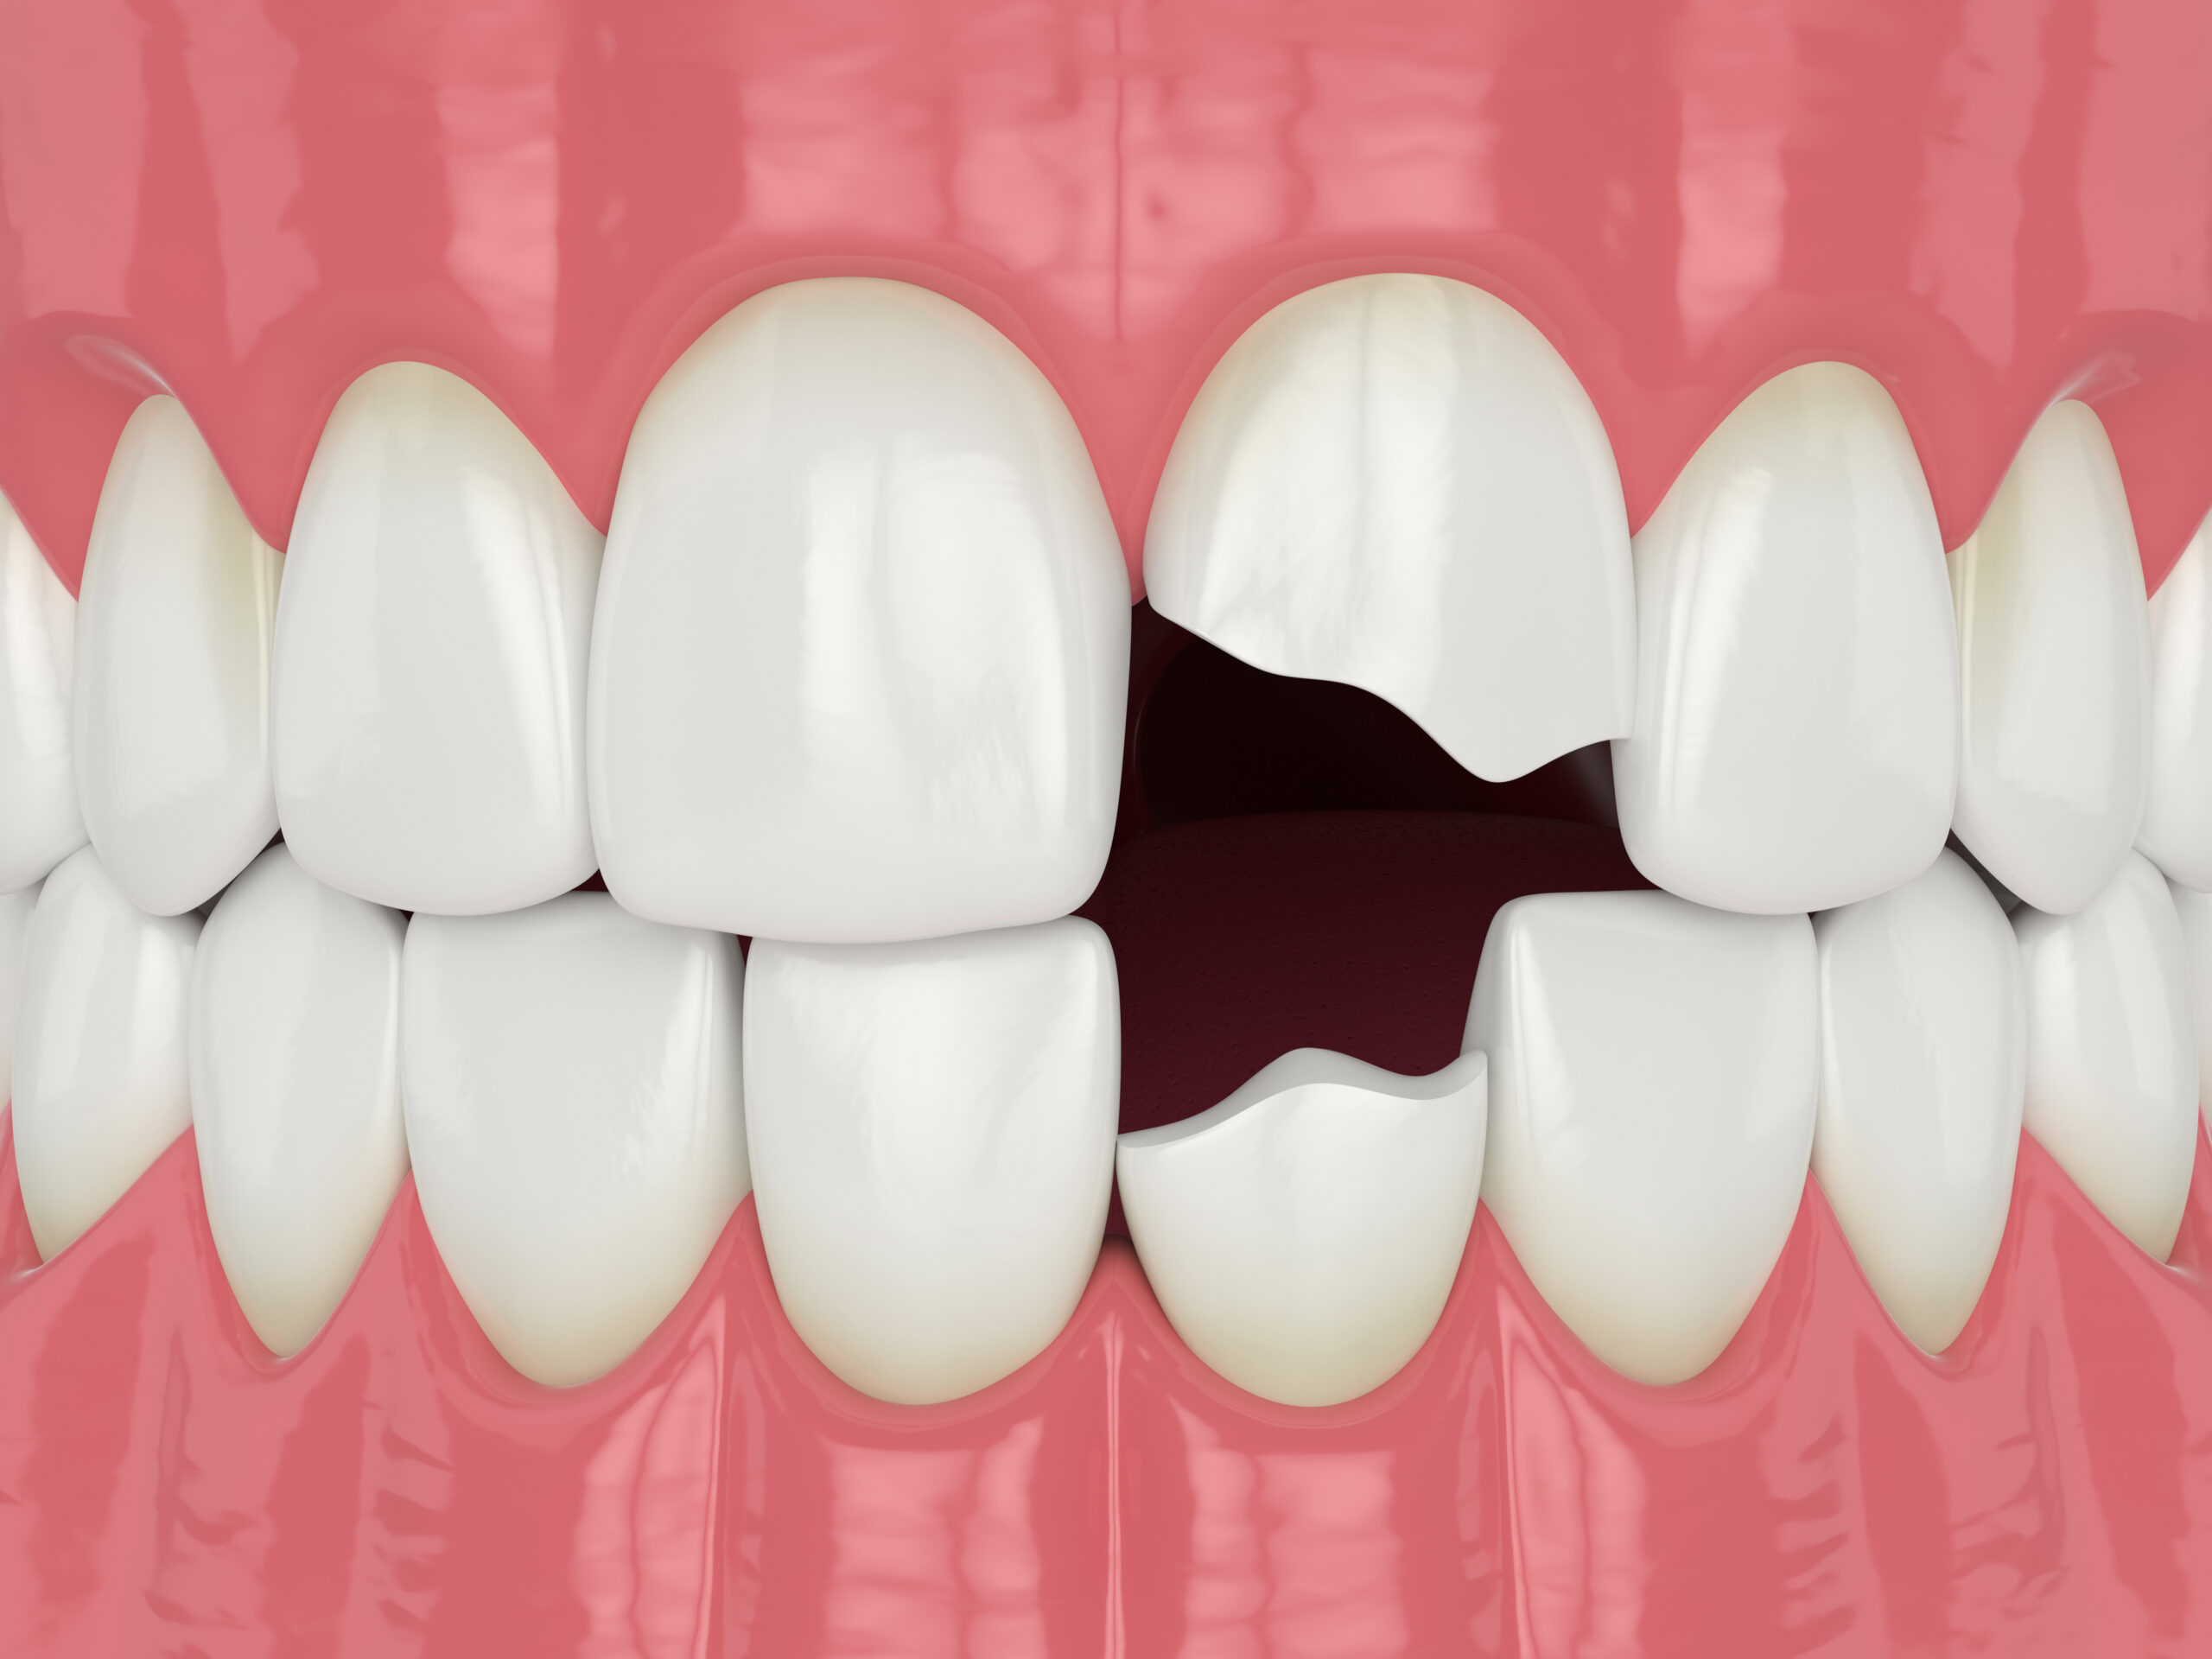 Procedures to Repair Your Cracked or Broken Tooth